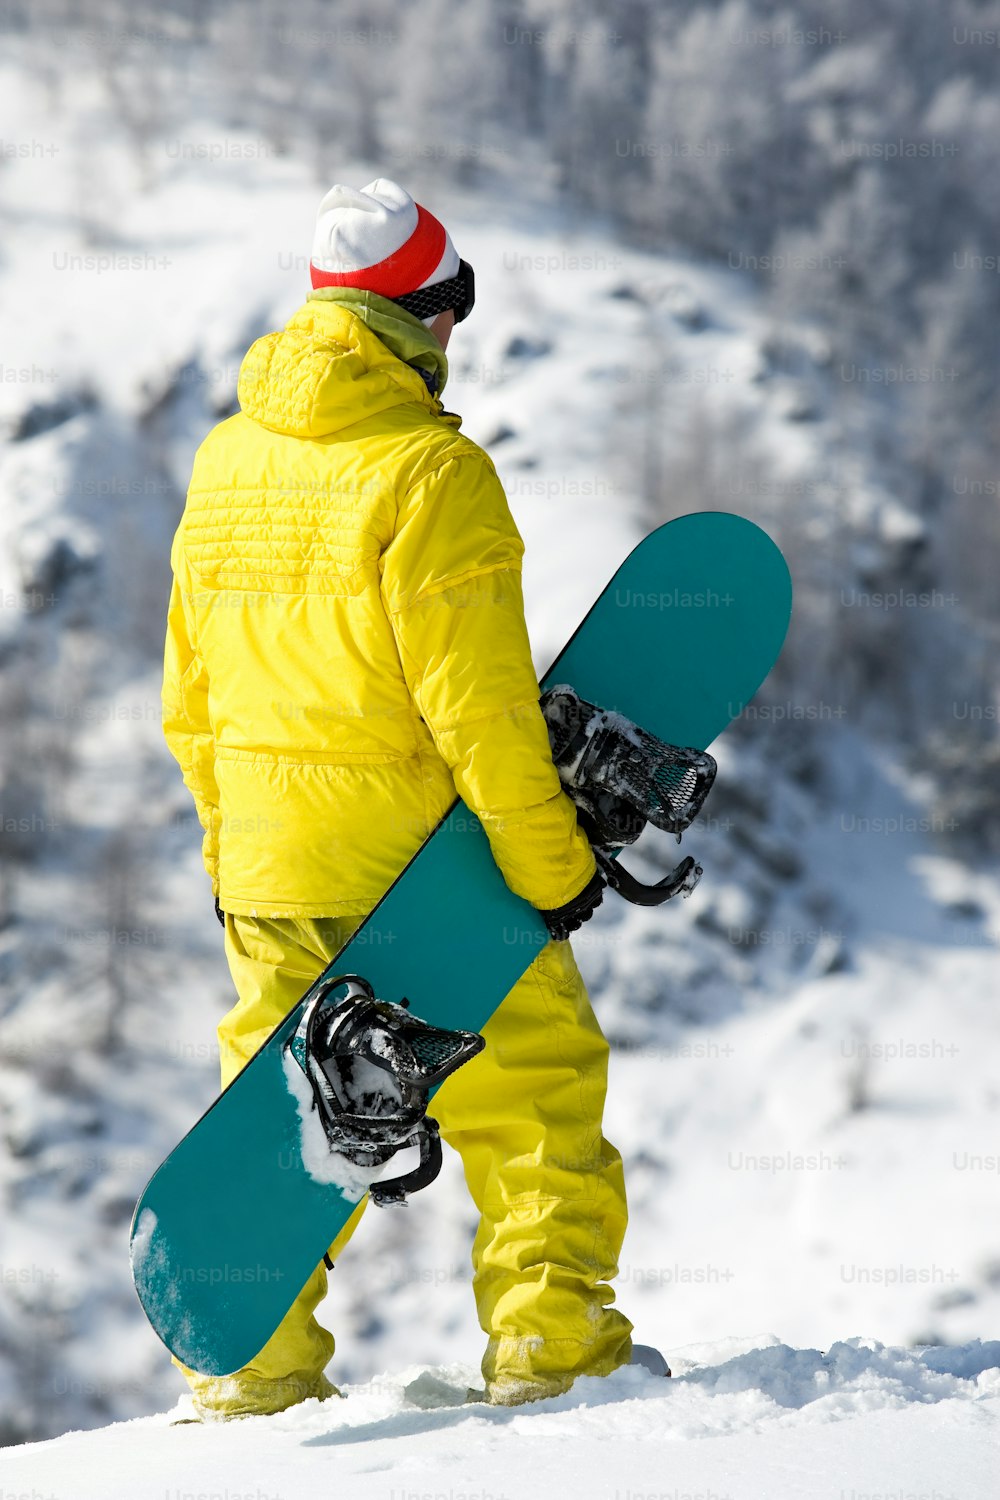 Rückansicht des Snowboarders, der im Winter in Schneewehen steht Hinweis für den Inspektor: Das Bild ist vor dem 1. September 2009